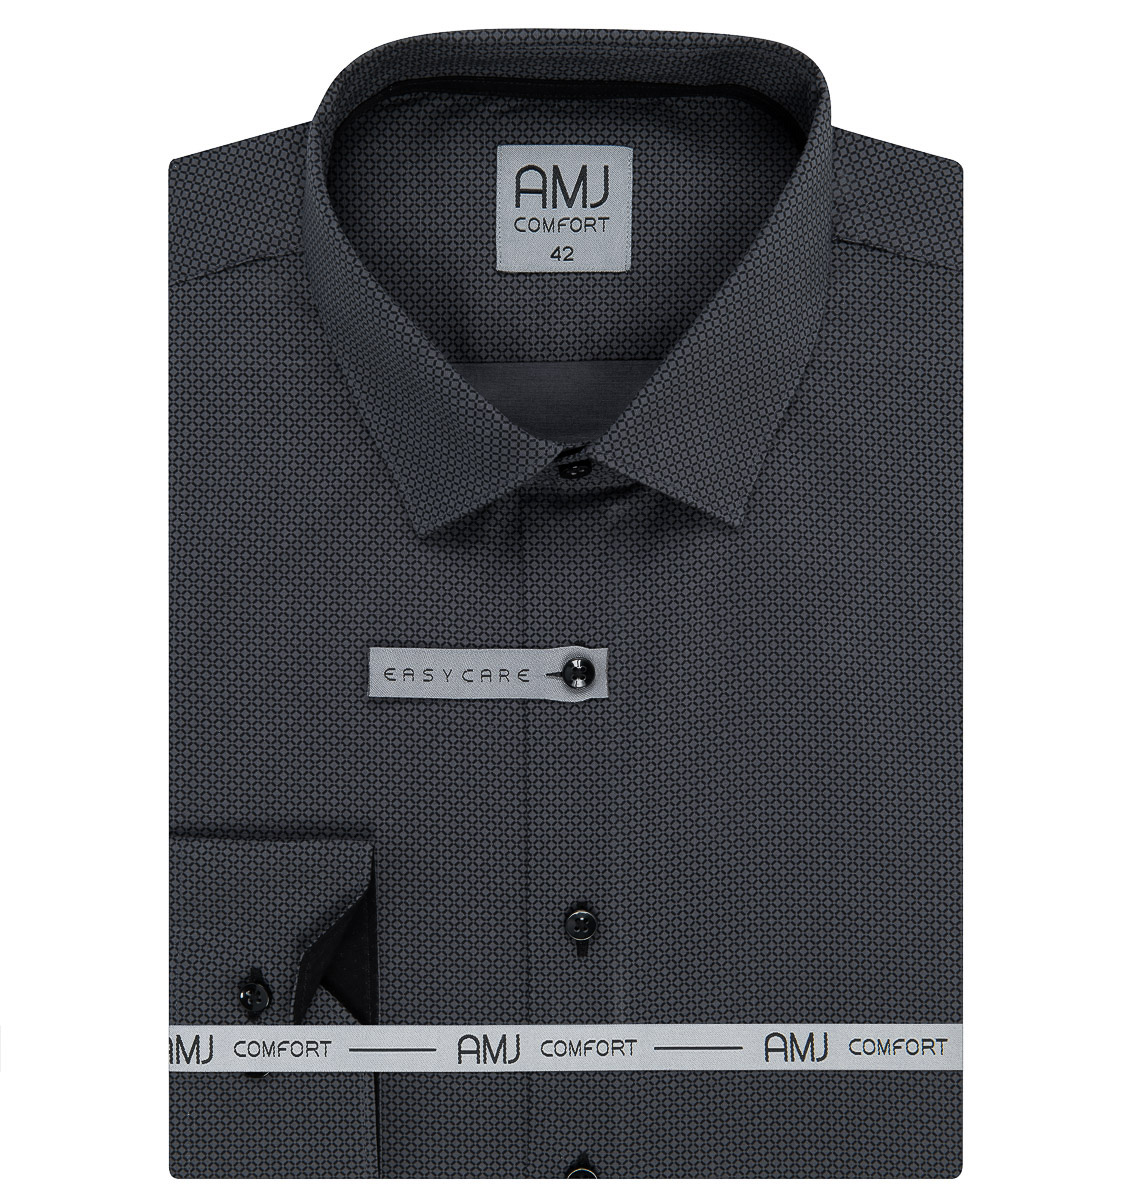 Pánská košile AMJ bavlněná, šedá kostičkovaná VDBR1213, dlouhý rukáv (regular + slim-fit)